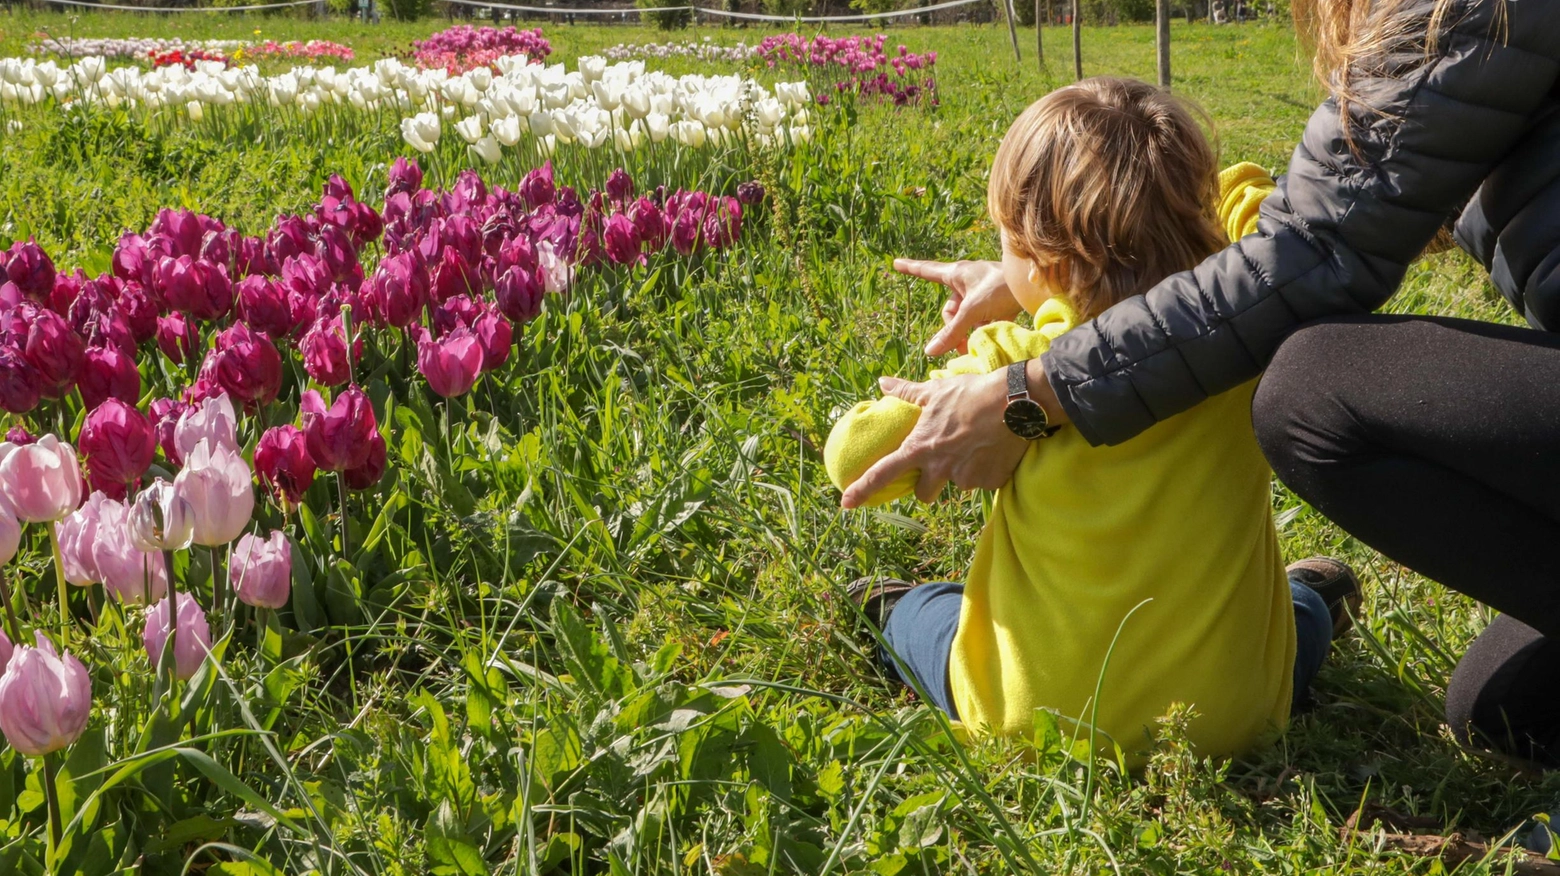 Il parco di tulipani resta senza fiori. Rubati i bulbi piantati nell’area